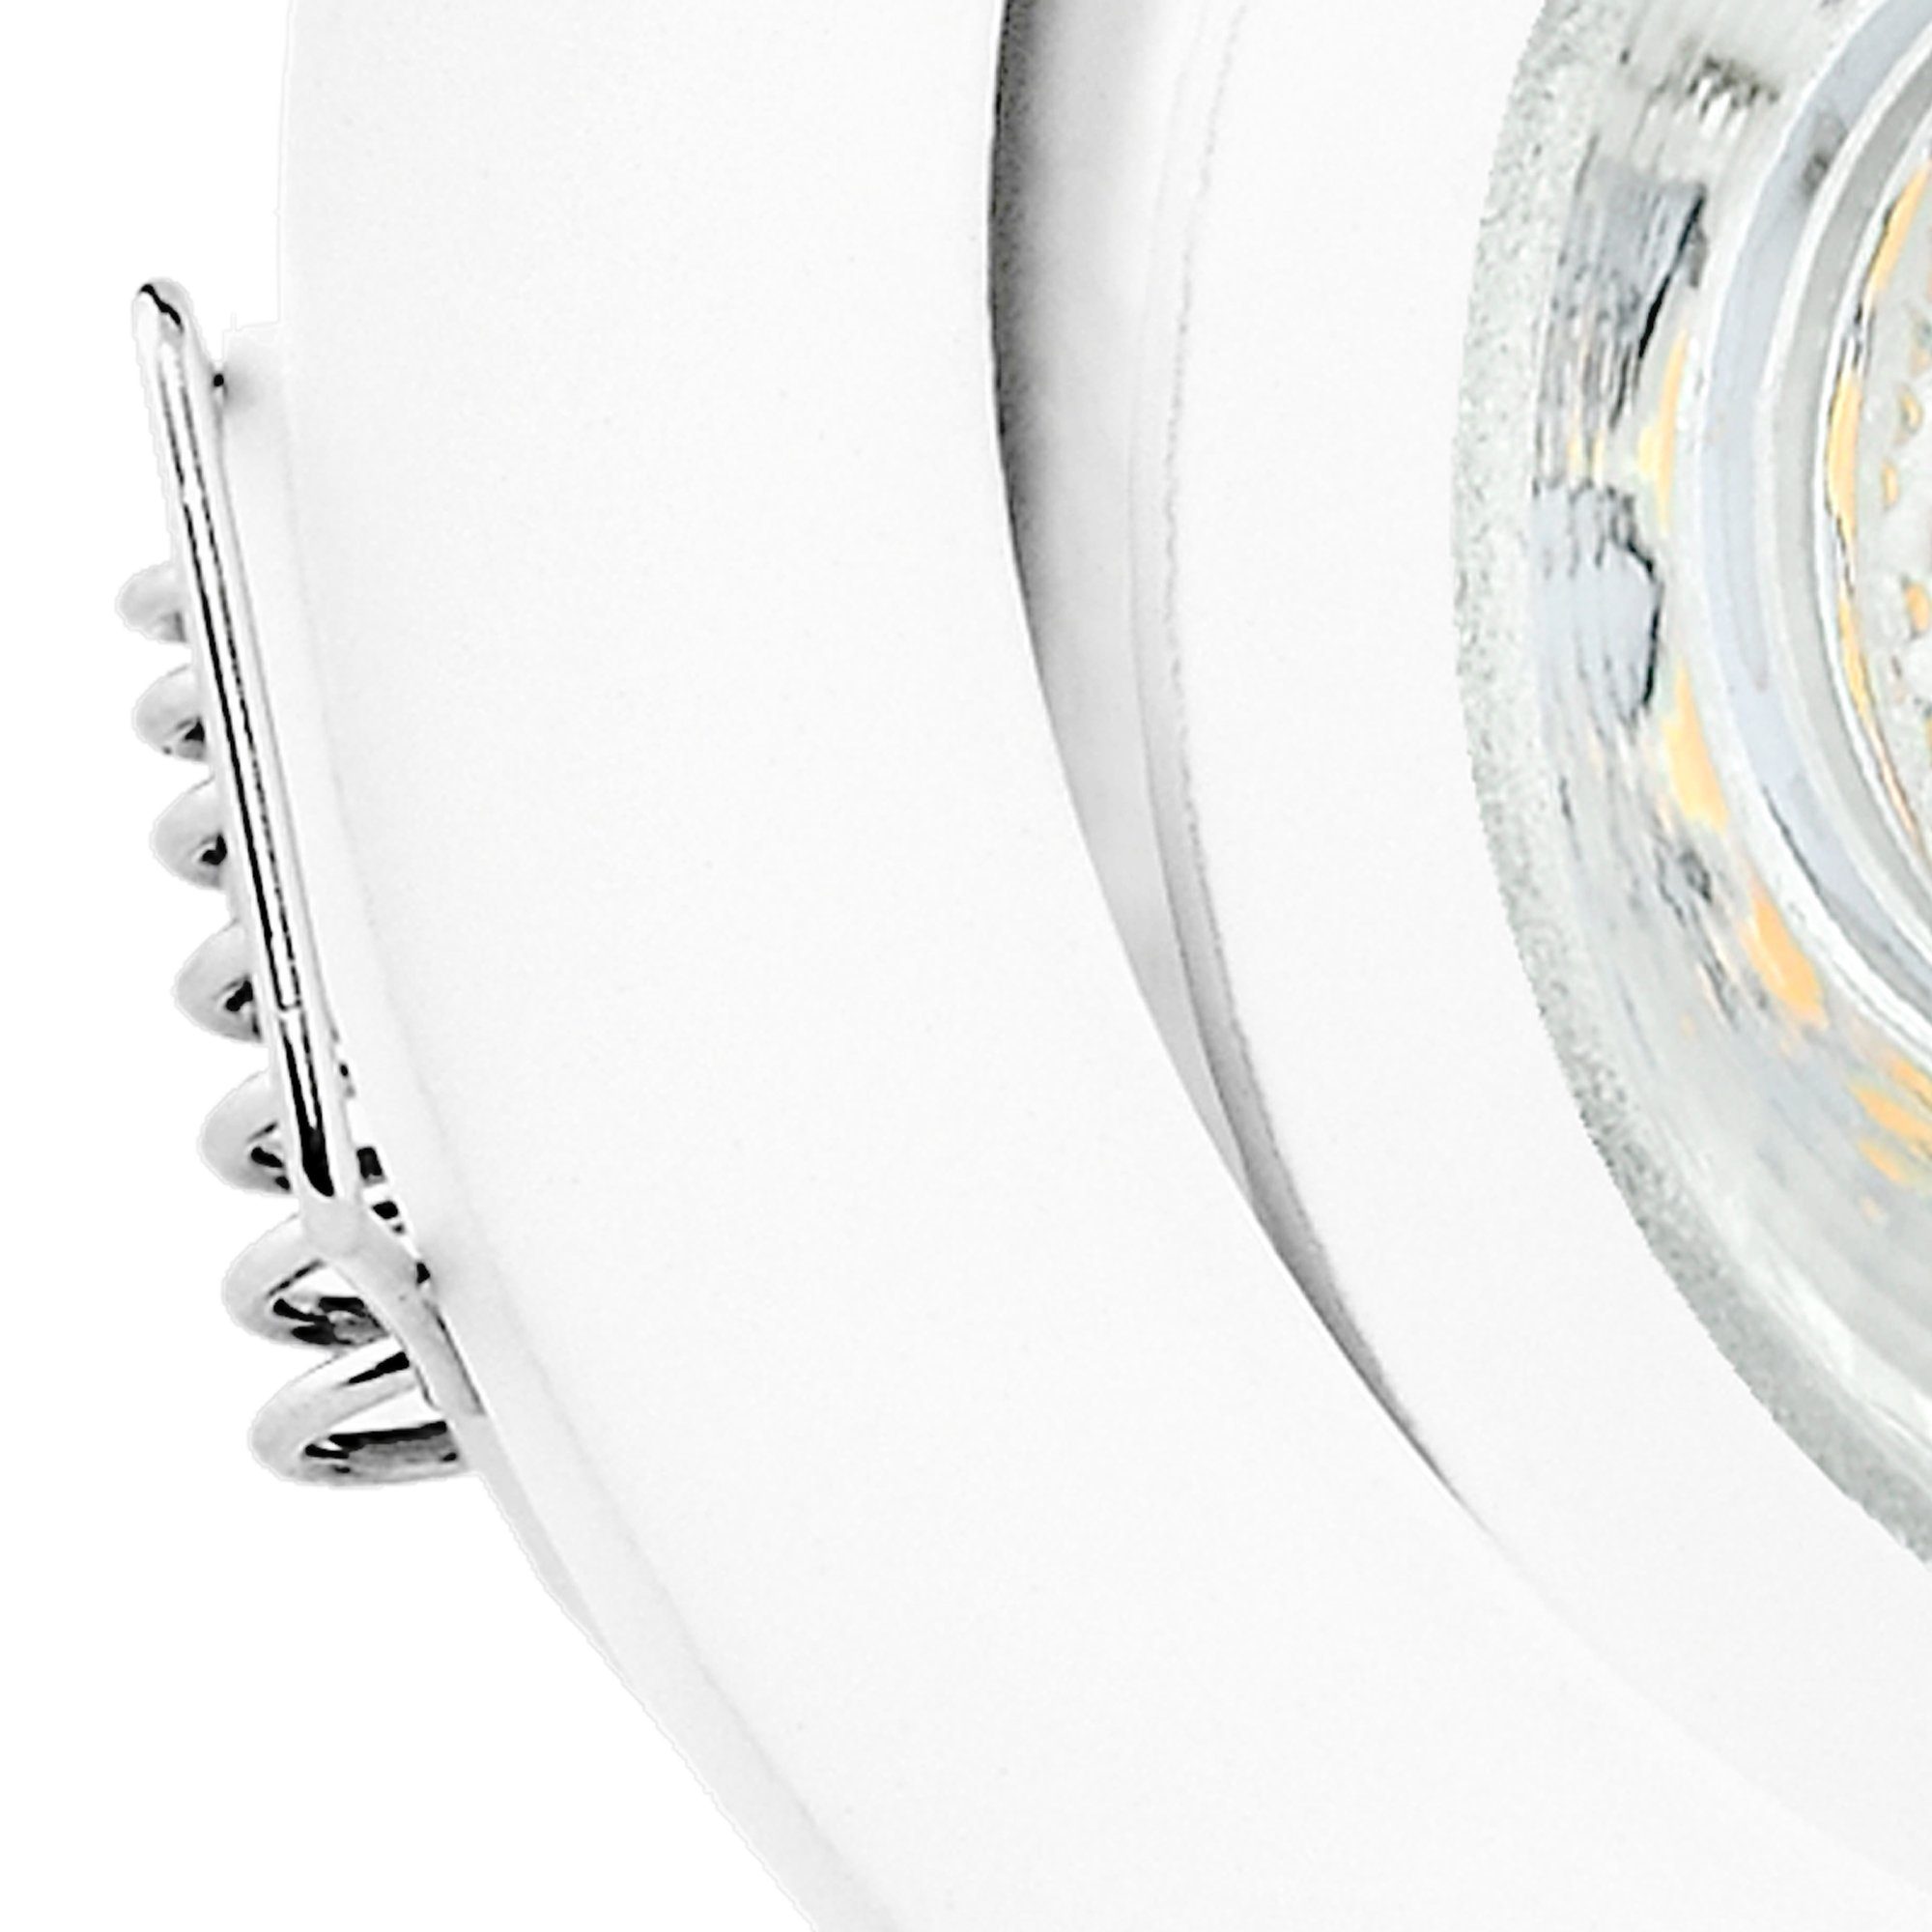 linovum LED Einbaustrahler - Leuchtmittel Leuchtmittel Weiss Einbaustrahler GU10 LED 3W 230V neutralweiss inklusive inklusive, schwenkbar, rund